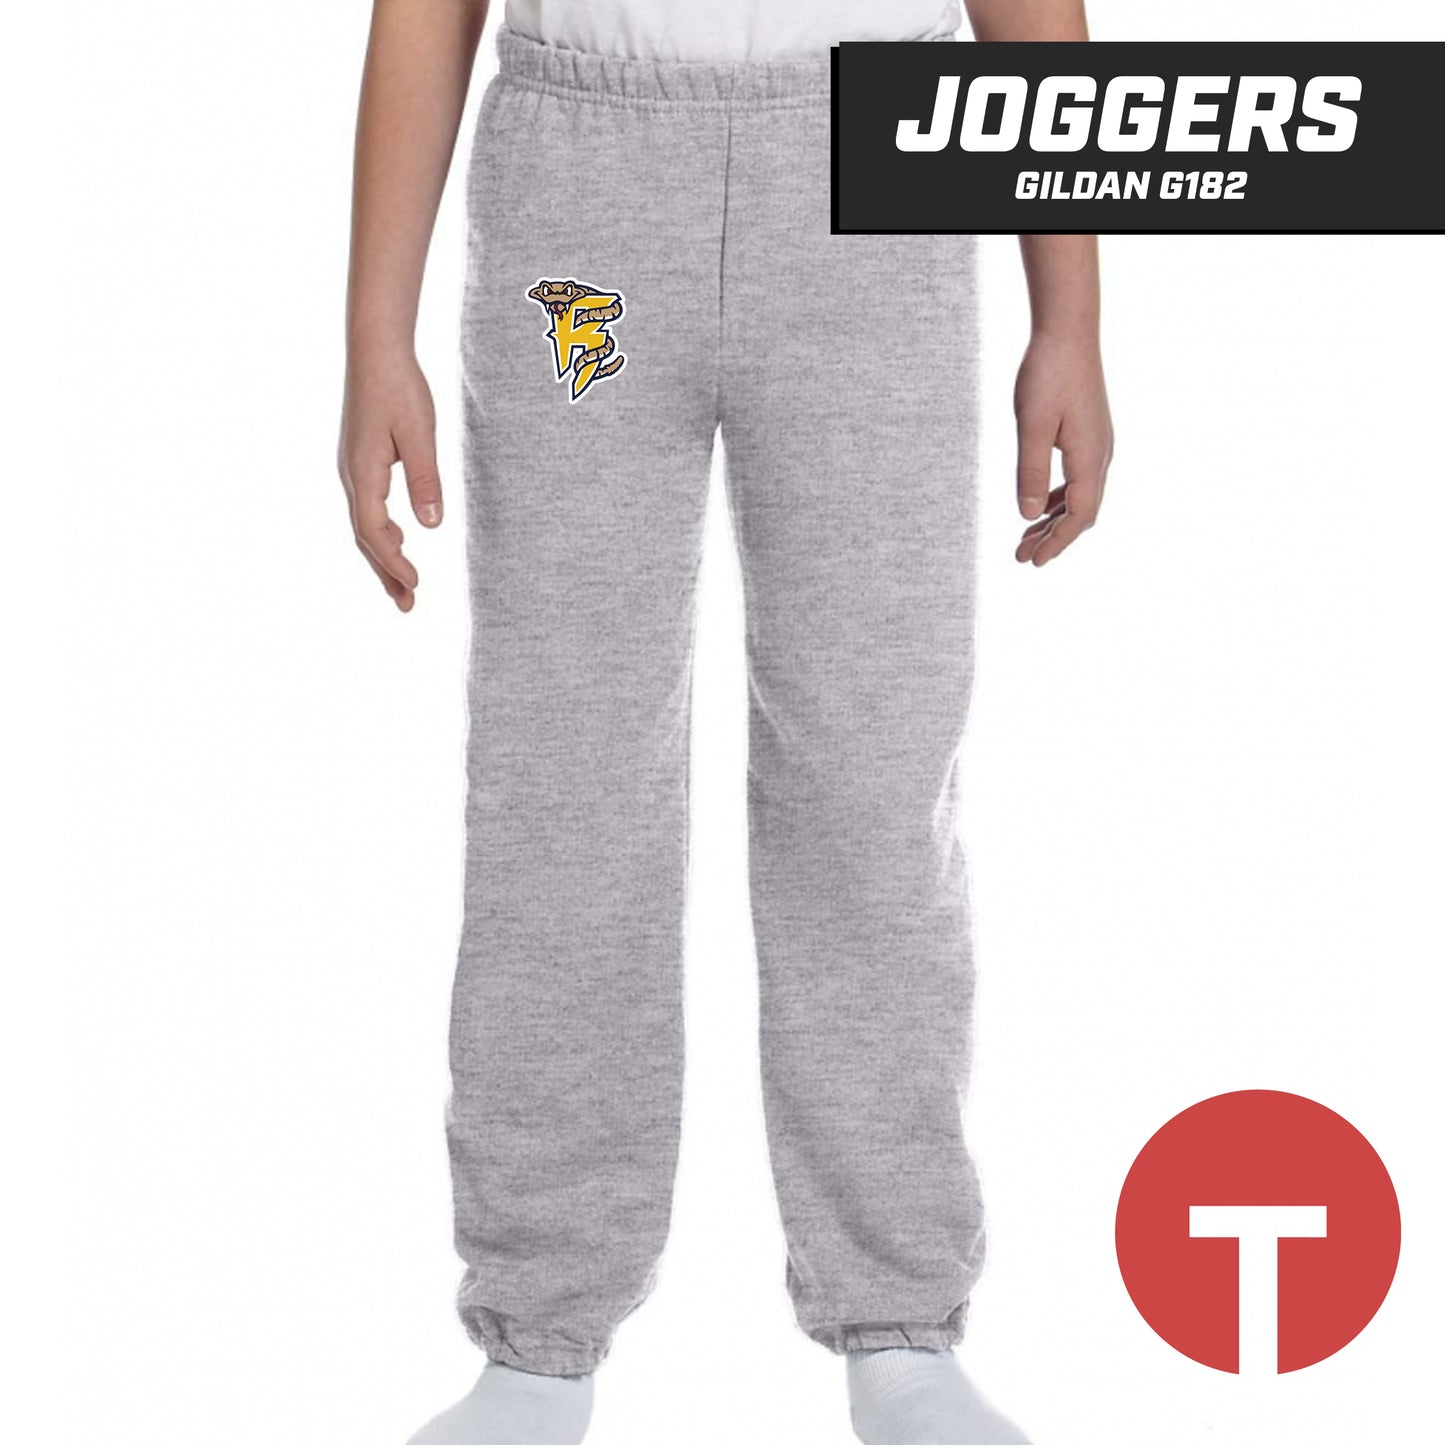 Rounding Third Rattlers - Jogger pants Gildan G182